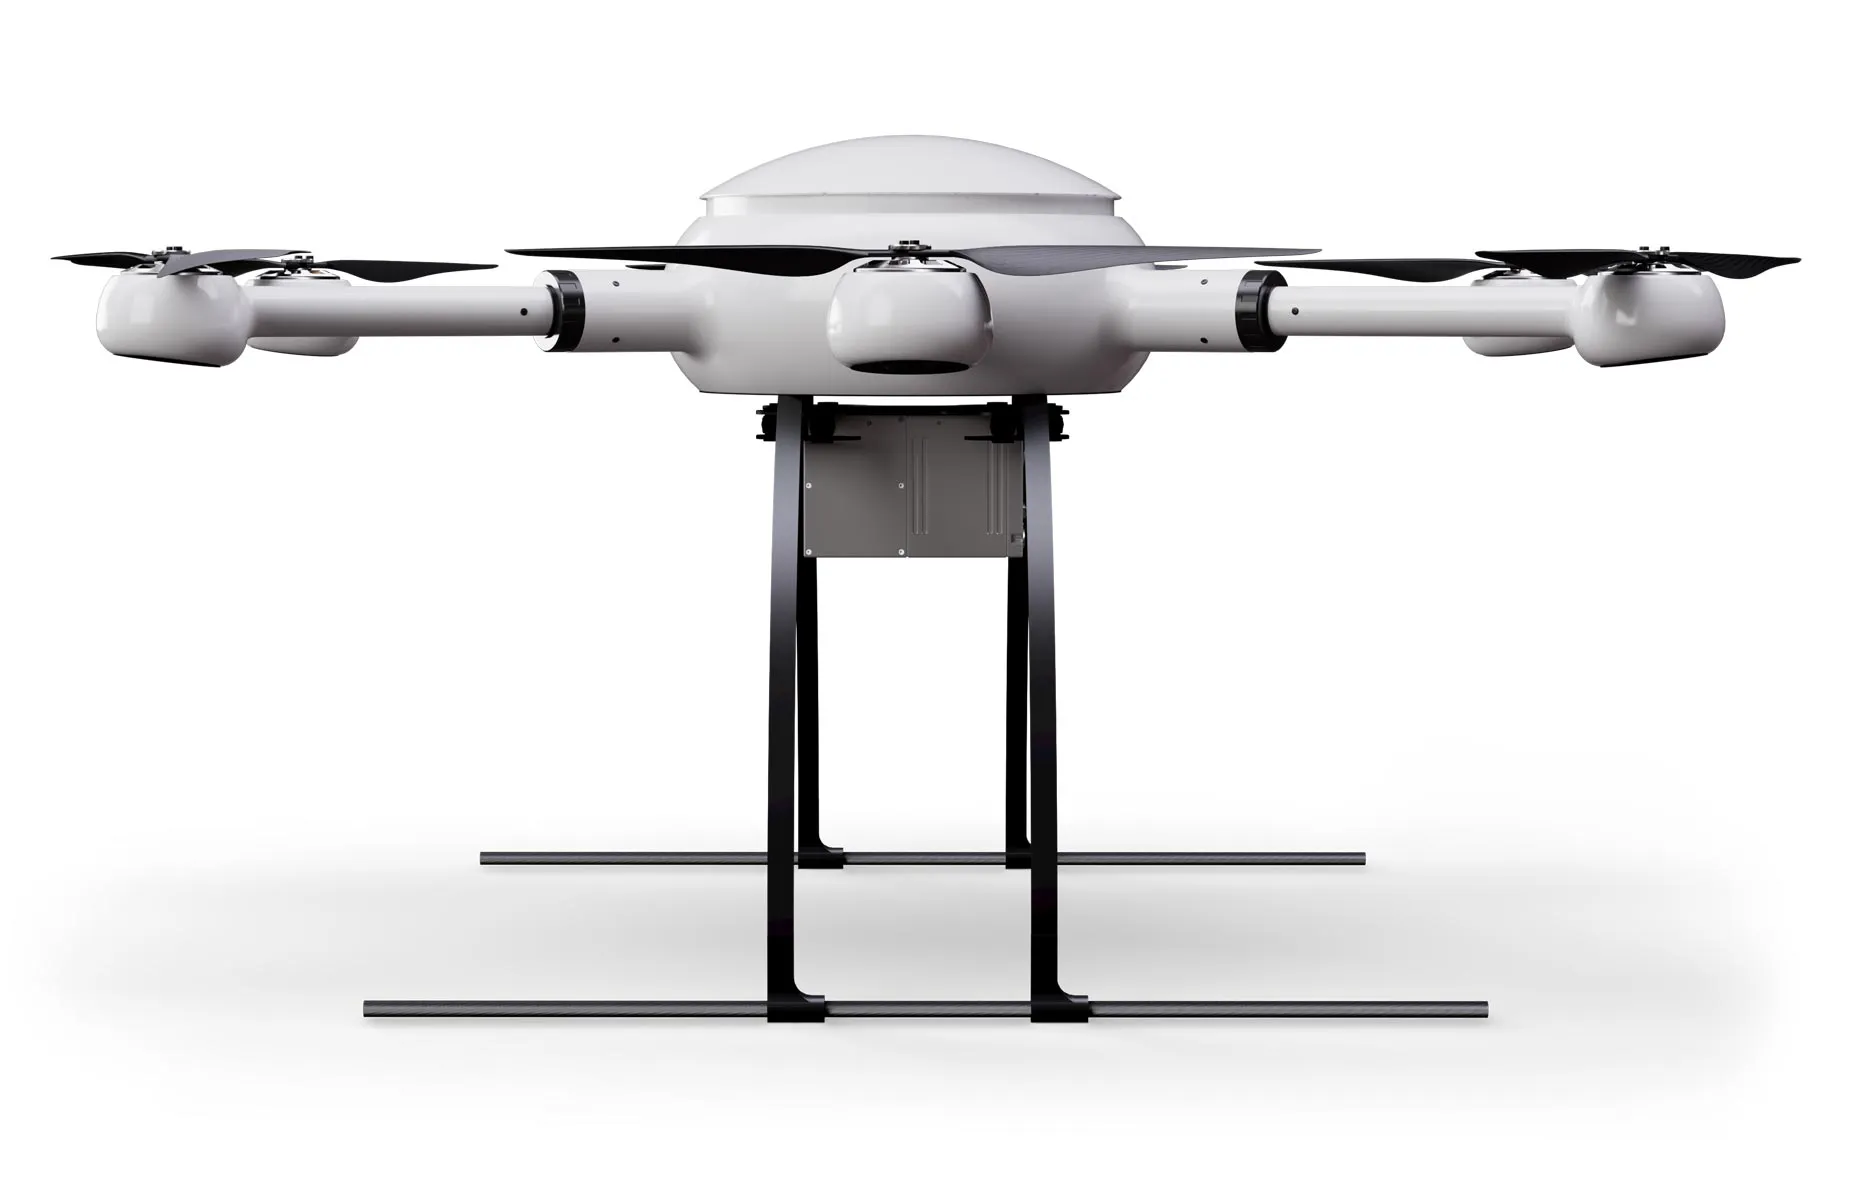 Exabotix Mercury LiDAR Drone industriel Vue latérale de gauche avec scanner LiDAR pour des scans 3D précis.